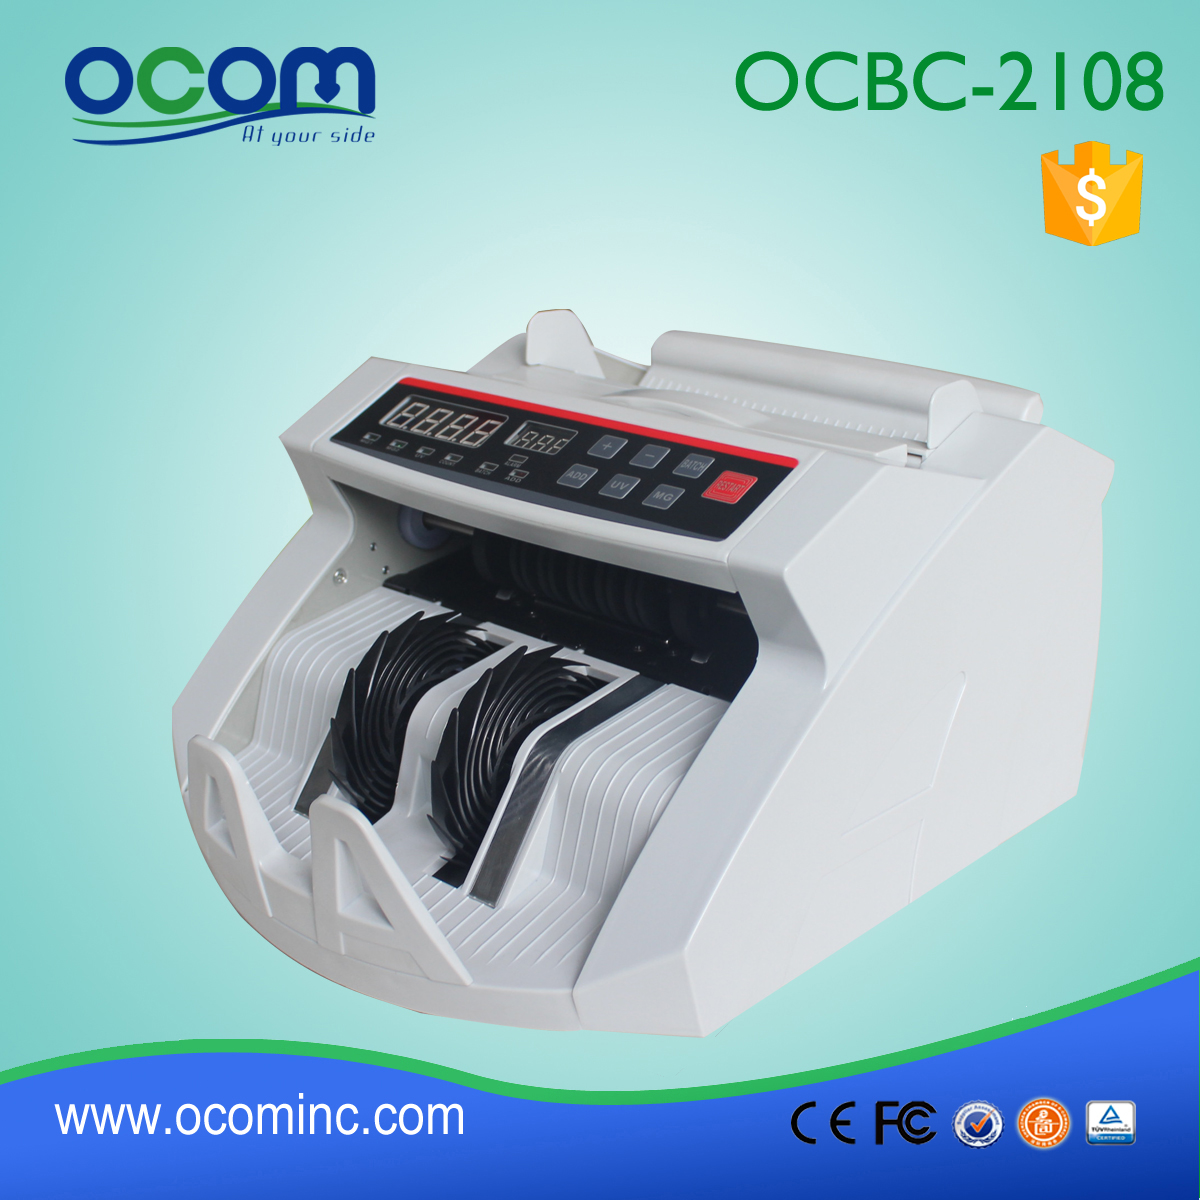 (OCBC-2108) - OCOM 2016 máquina de venta libre más nuevo proyecto de ley